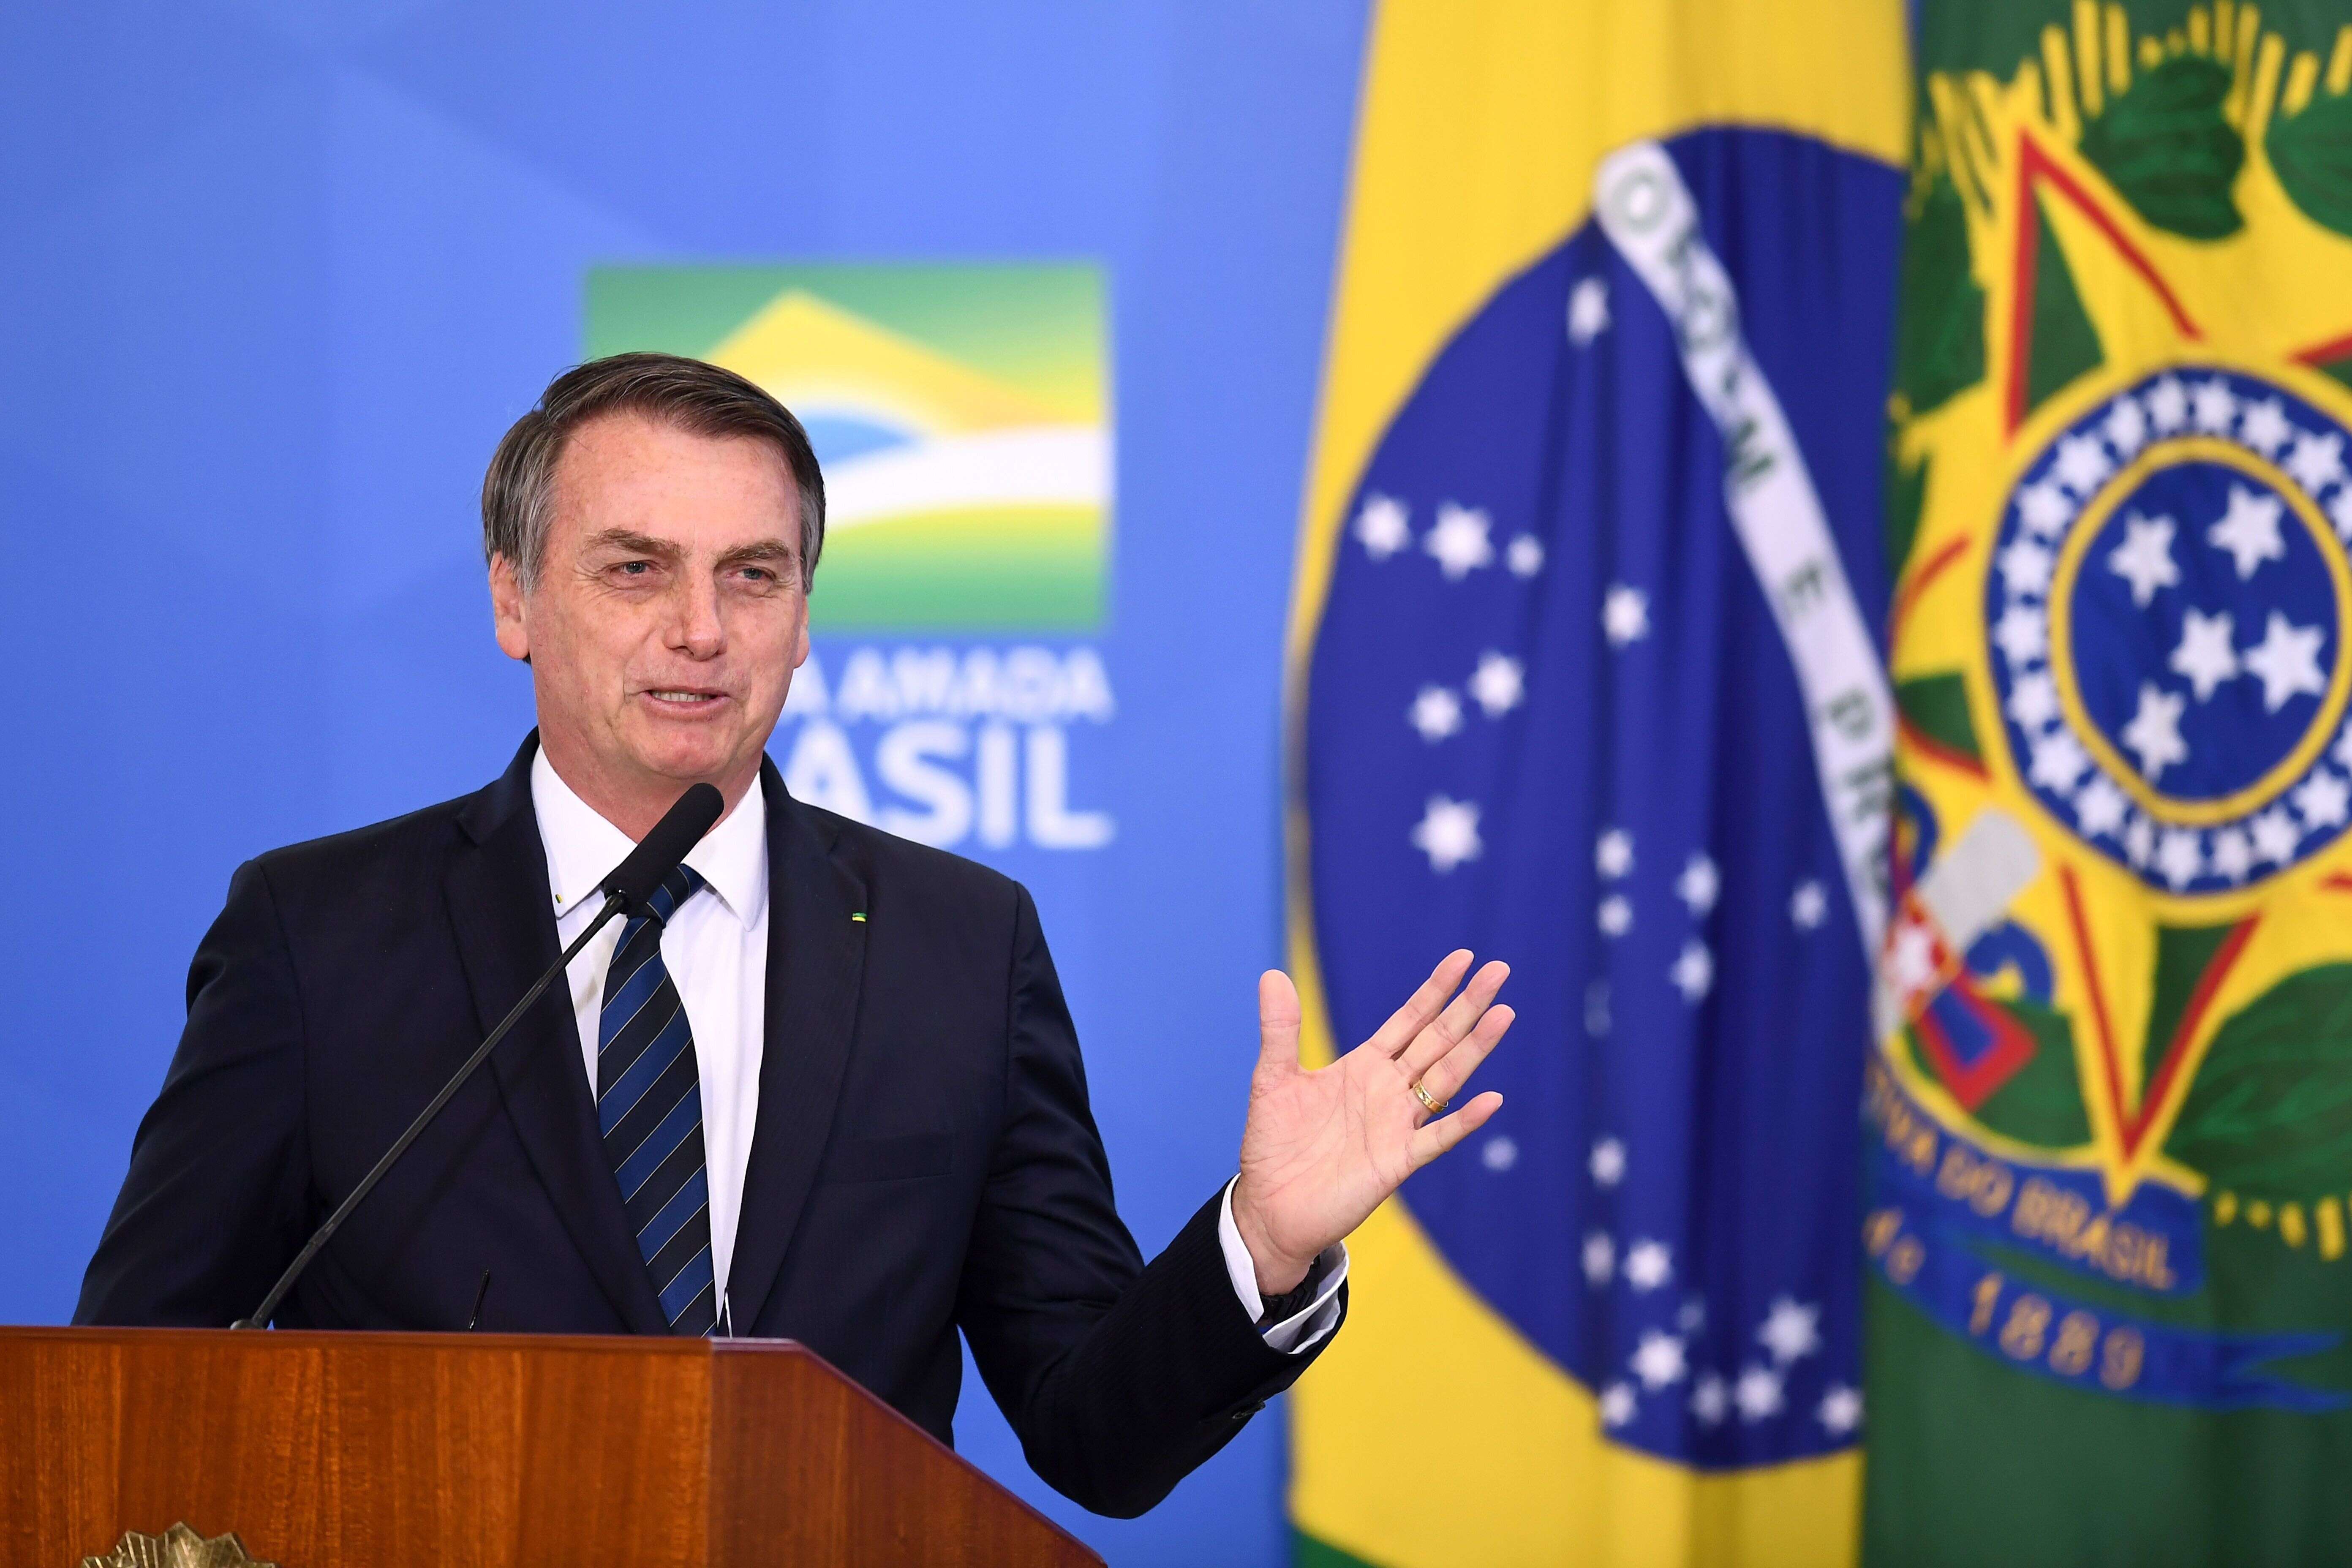 Le président du Brésil Jair Bolsonaro s'est fendu d'une énième sortie polémique.